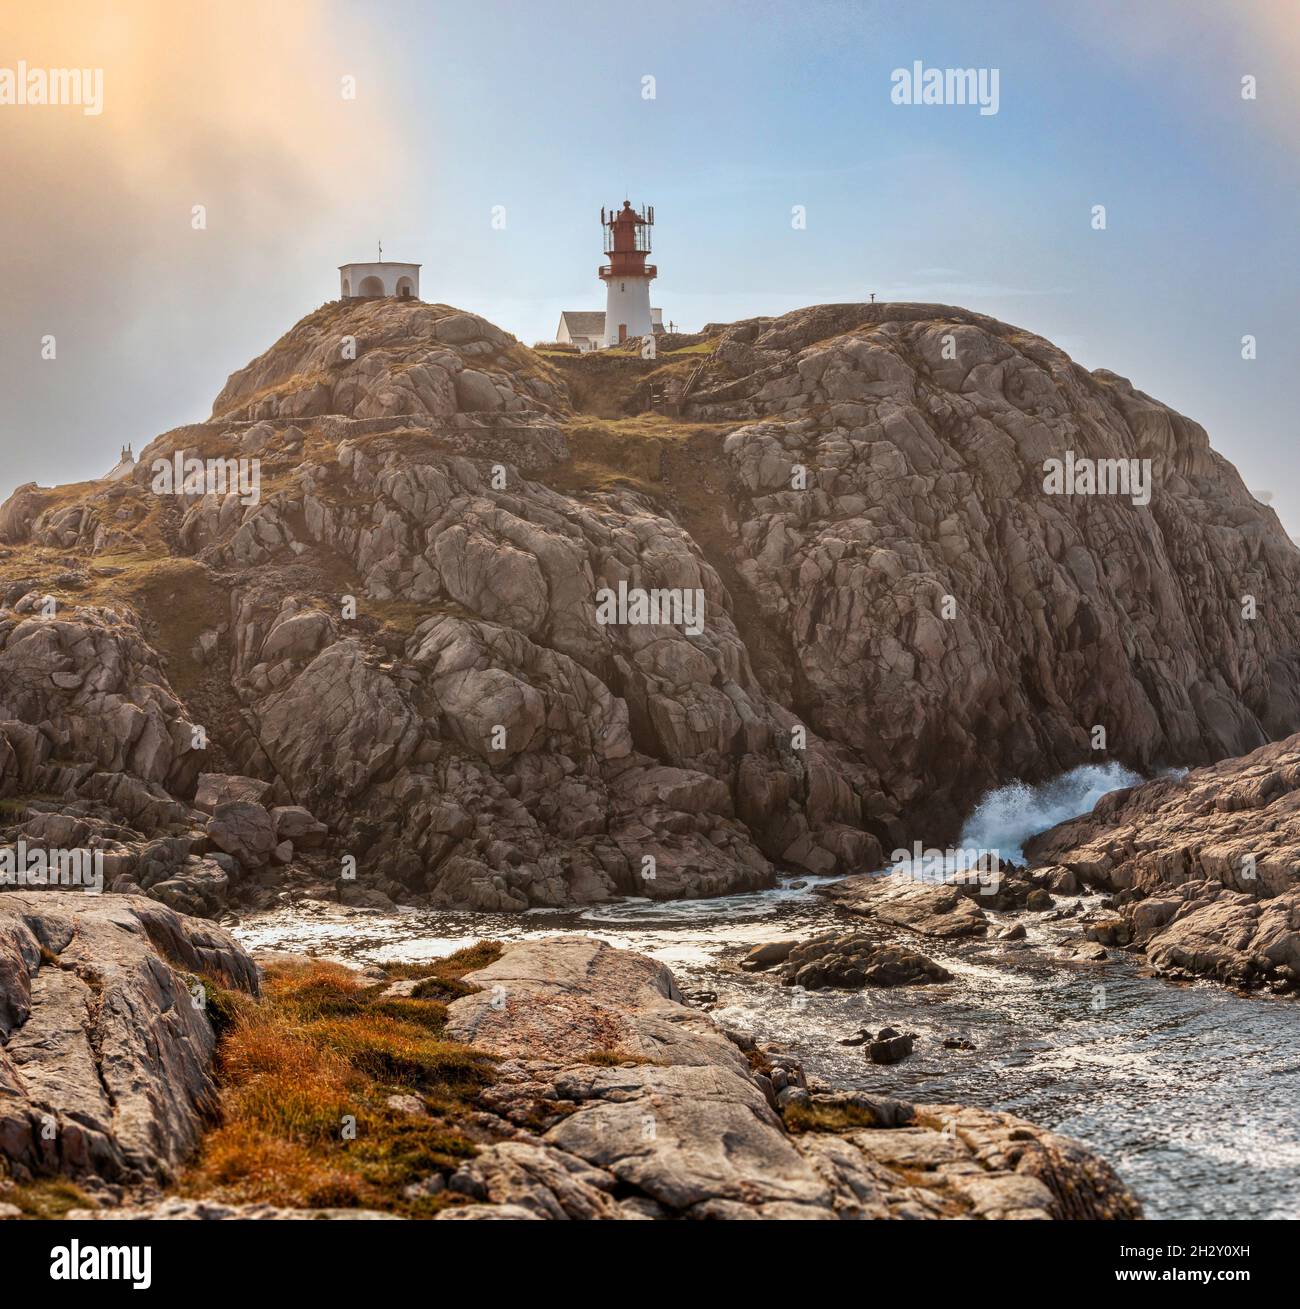 Paysage côtier au phare de Lindesnes, Sea and Rocks, pointe sud de la Norvège continentale Banque D'Images